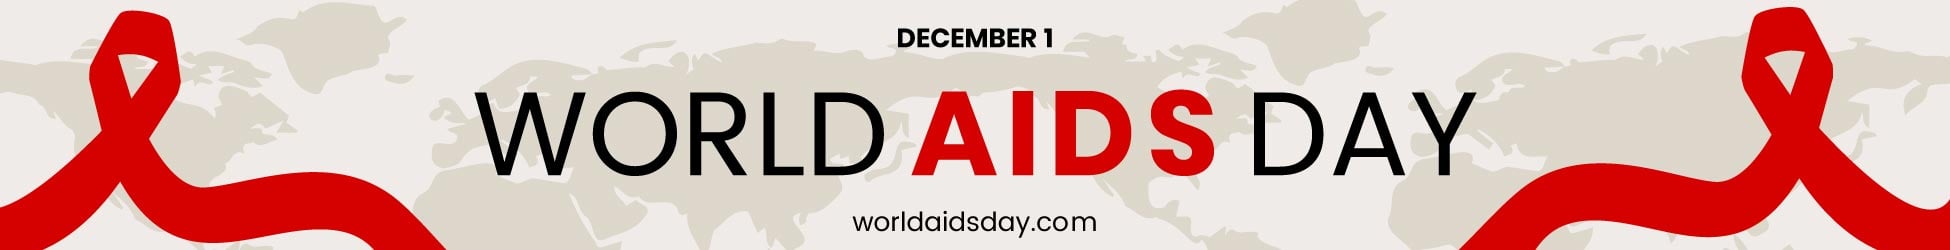 World AIDS Day Website Banner